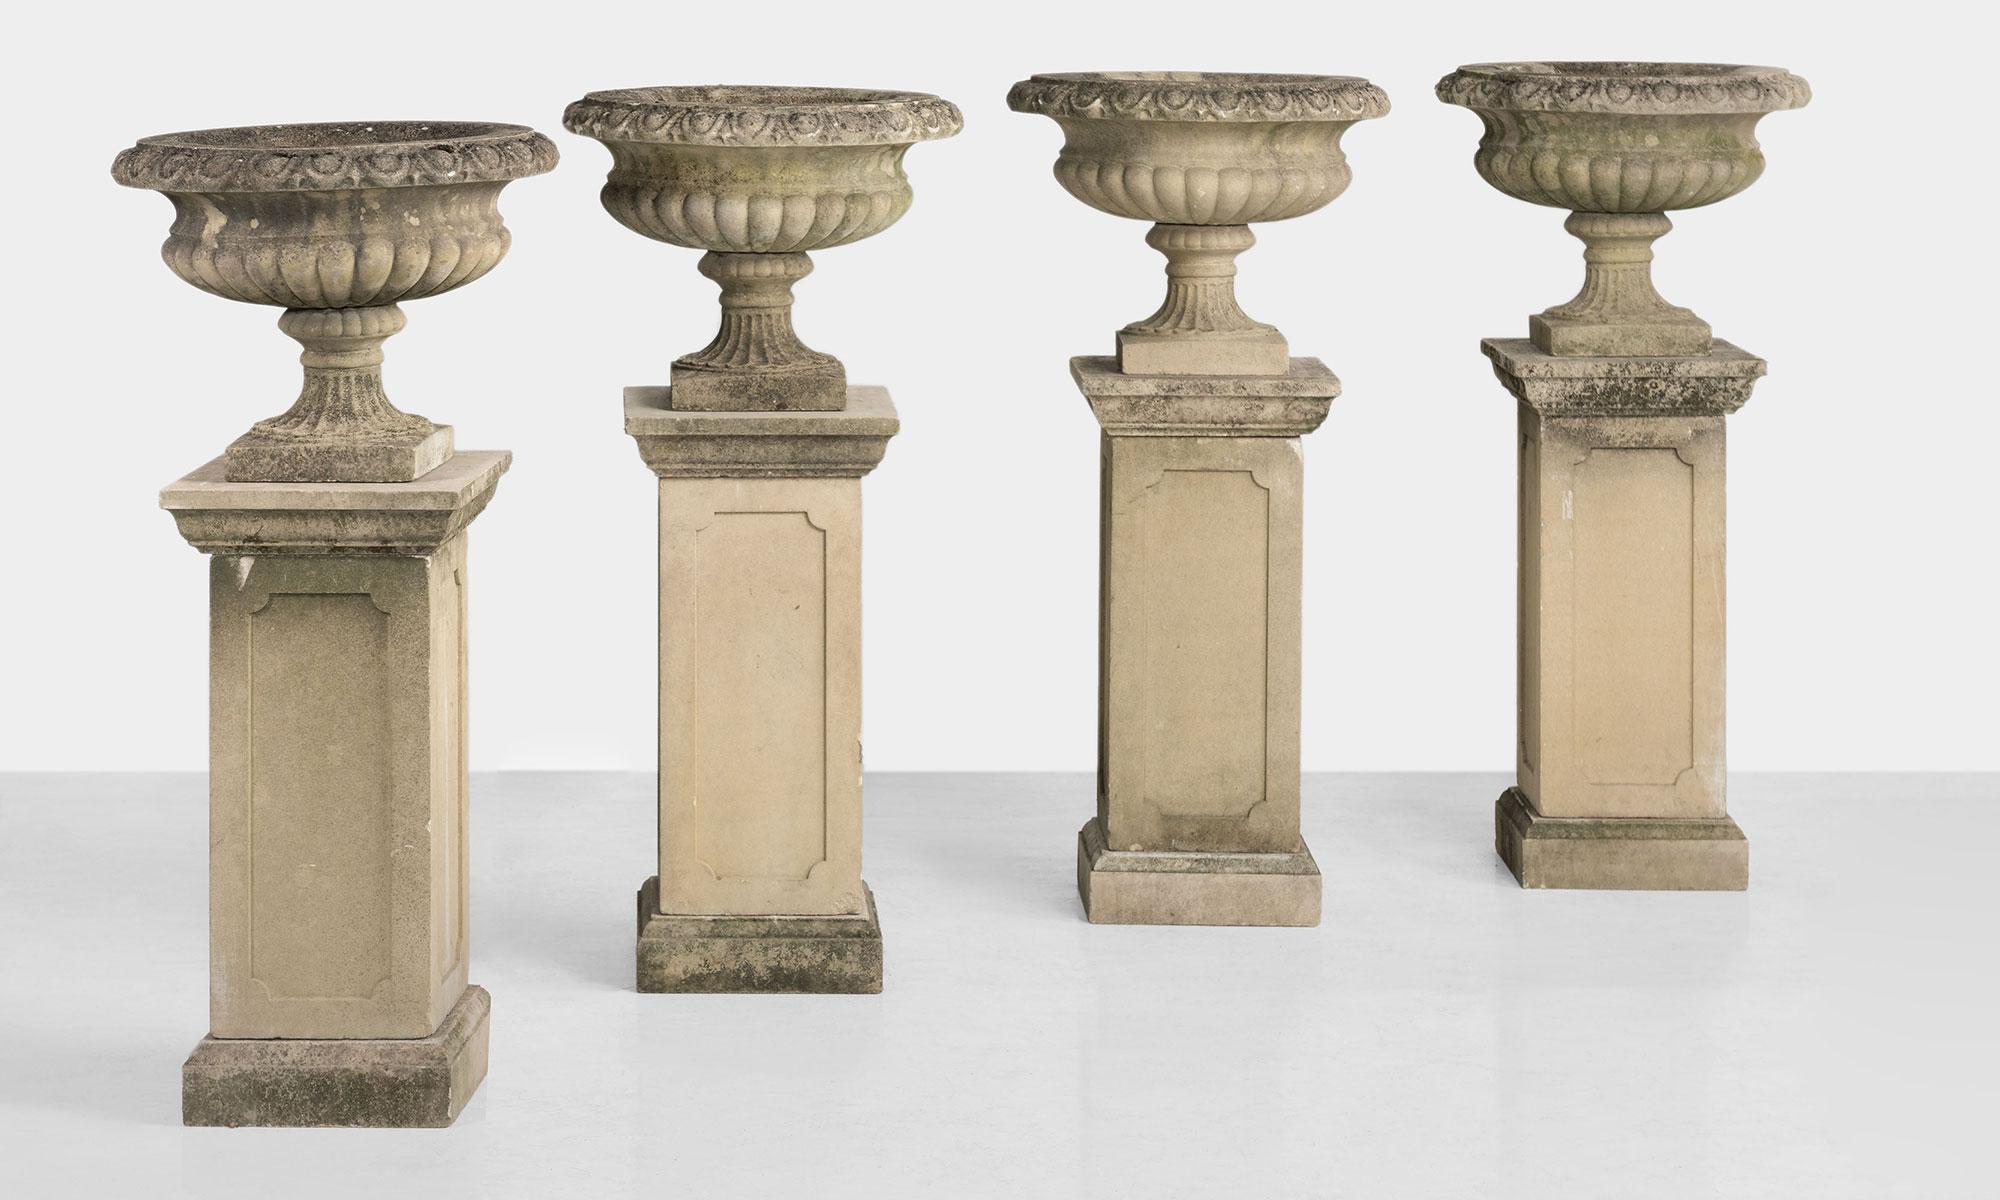 Series of Four Garden Urns with Pedestals, circa 1950

Made in England, circa 1950.